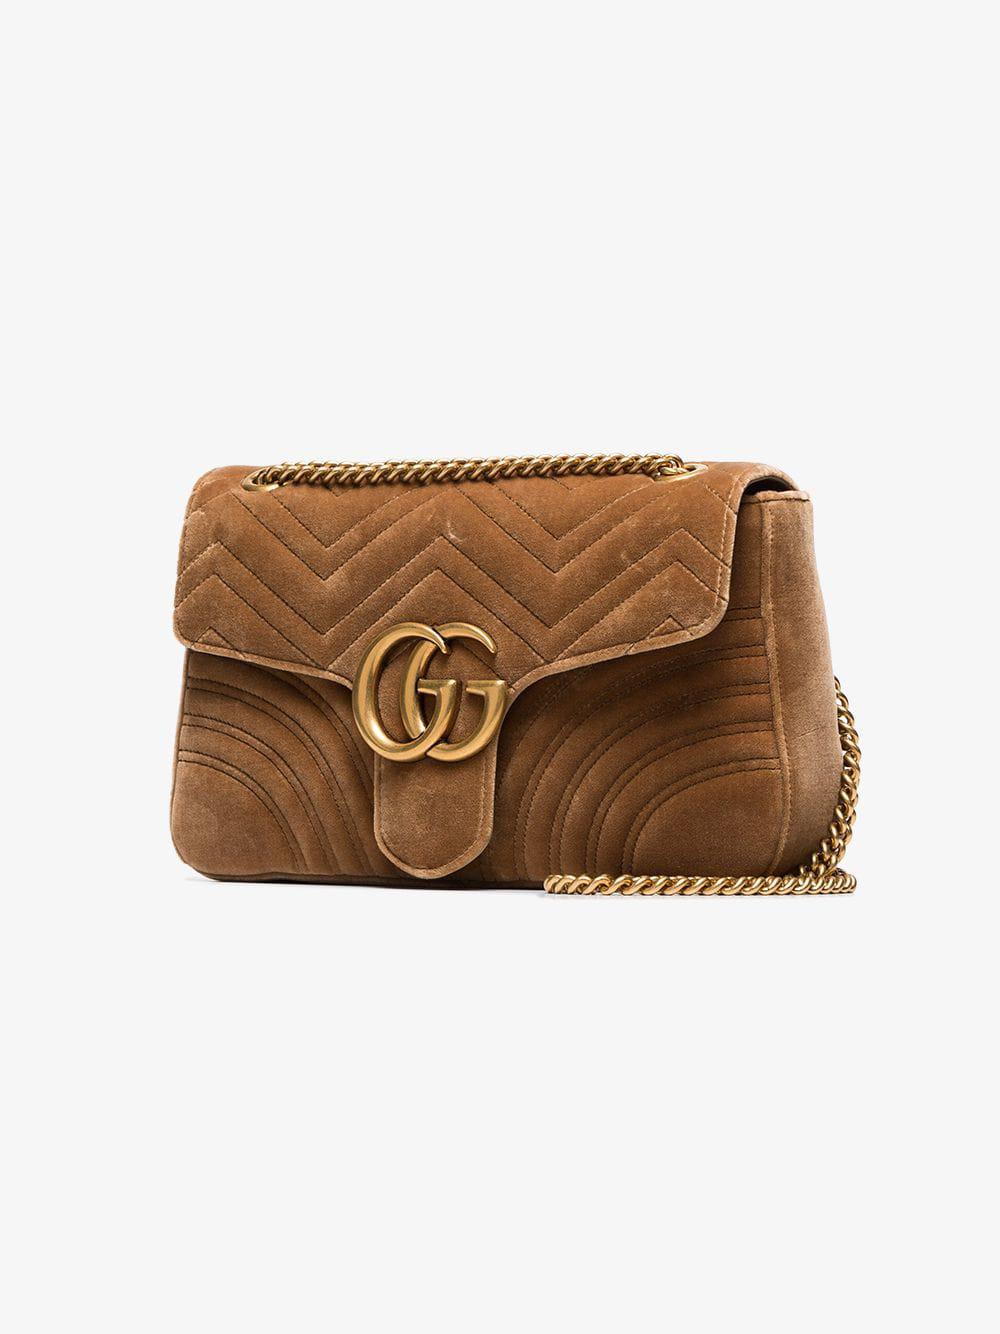 Et centralt værktøj, der spiller en vigtig rolle Klæbrig Formuler Gucci Taupe GG Marmont Velvet Medium Shoulder Bag in Brown - Lyst